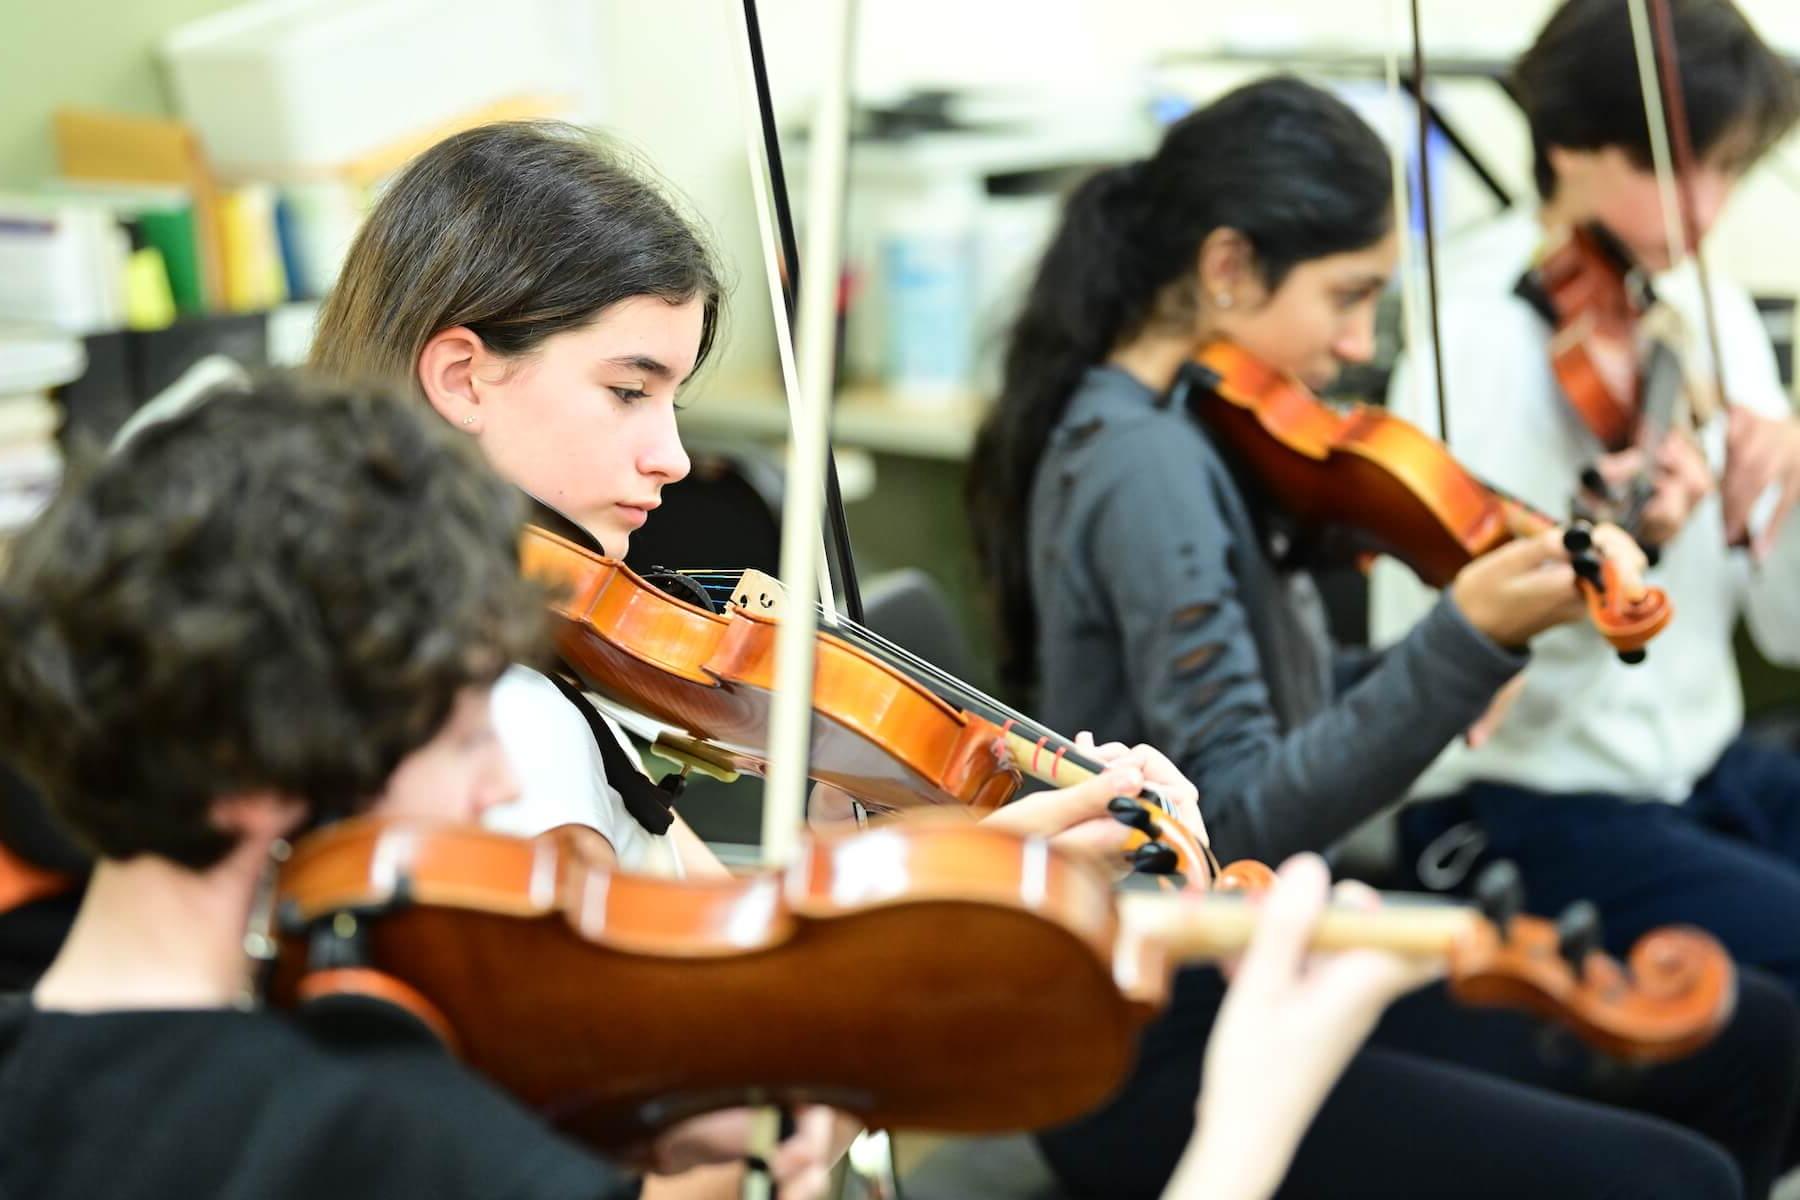 菲尔德斯顿学校学生在弦乐课上练习小提琴